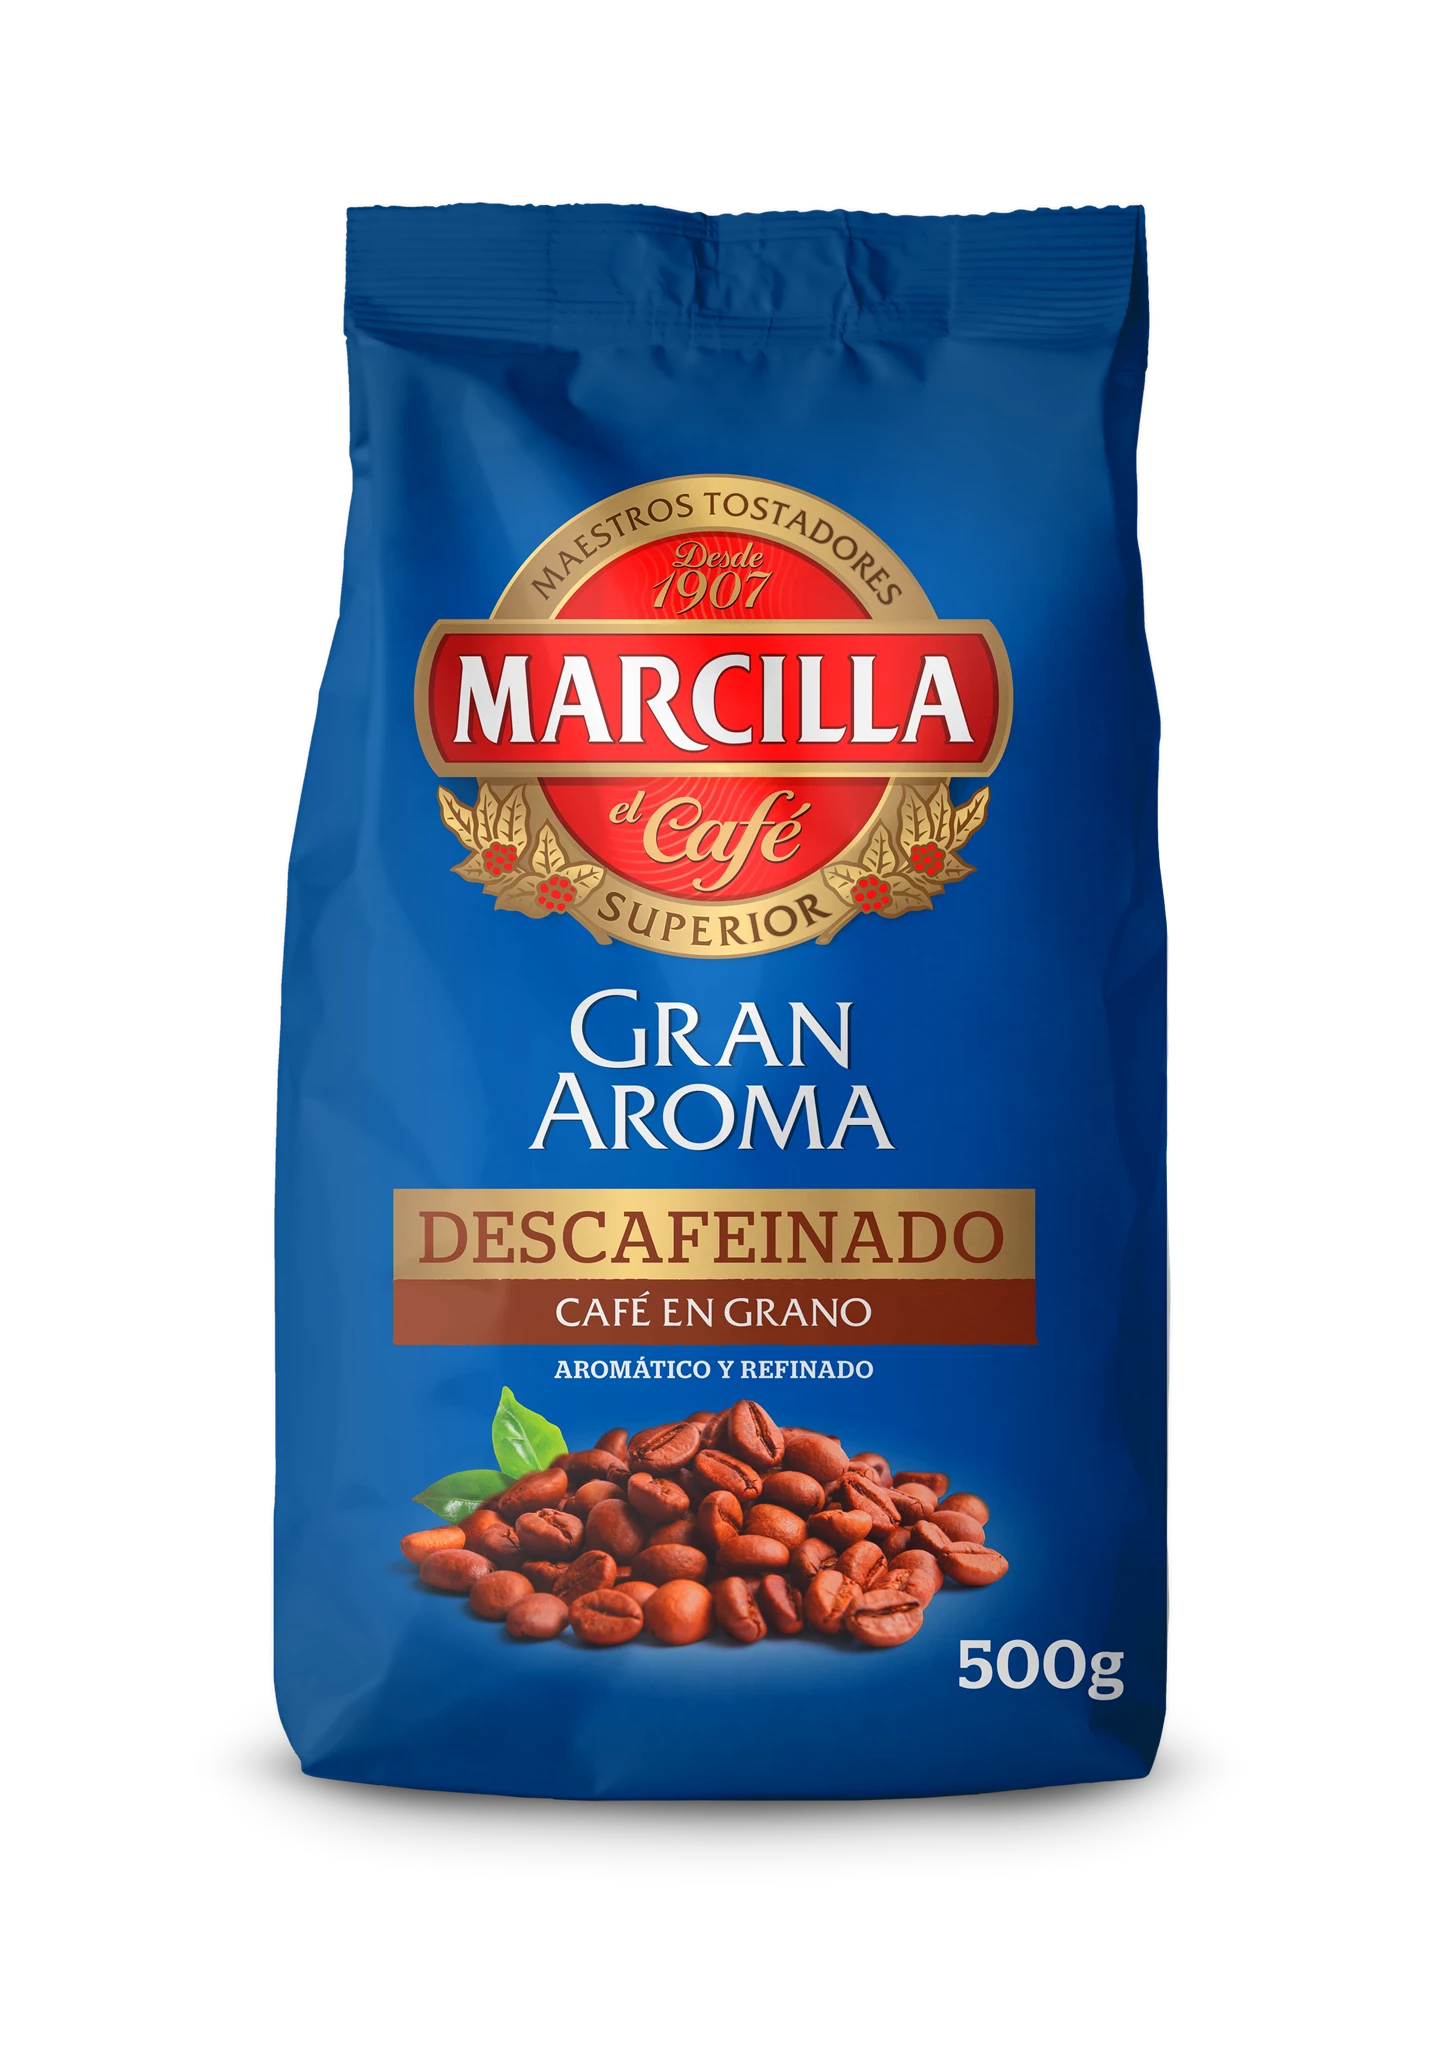 Café molido tueste natural Marcilla - 250g - E.leclerc Soria